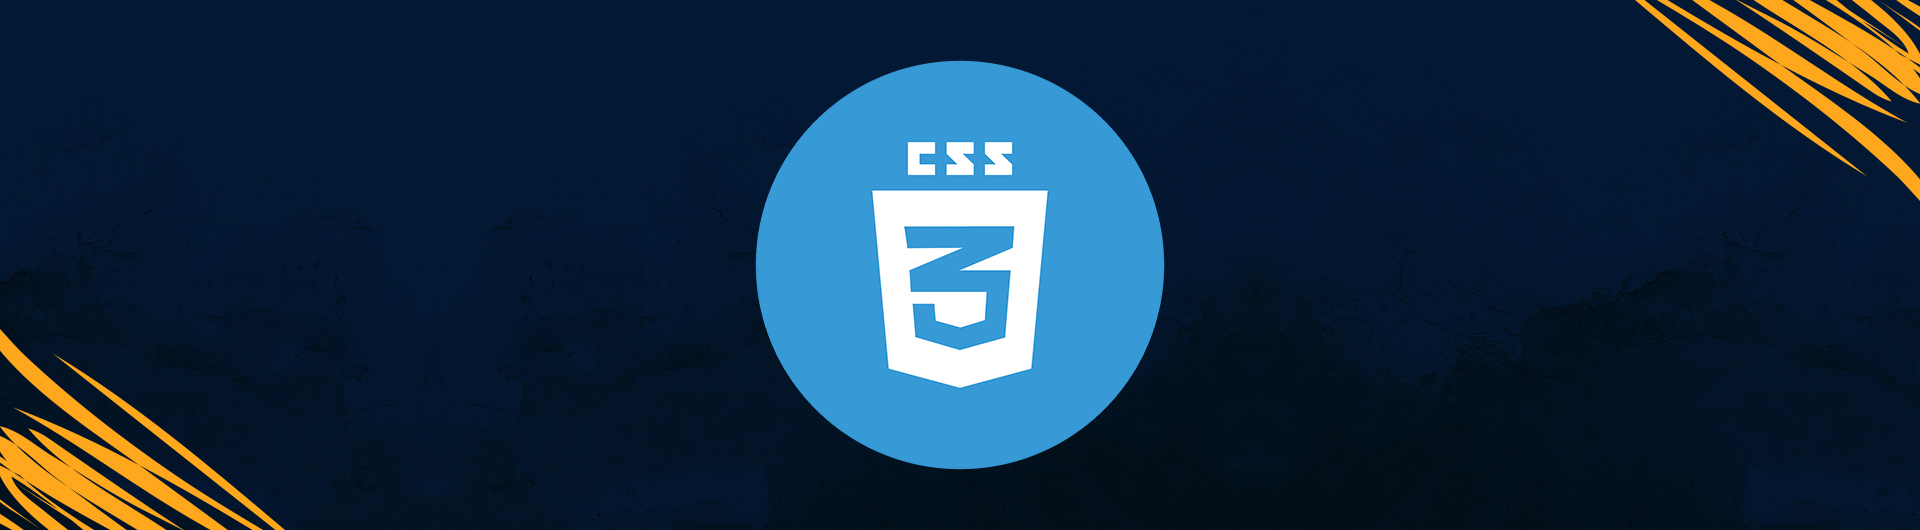 لغة تنسيق صفحات الويب CSS-CSS3